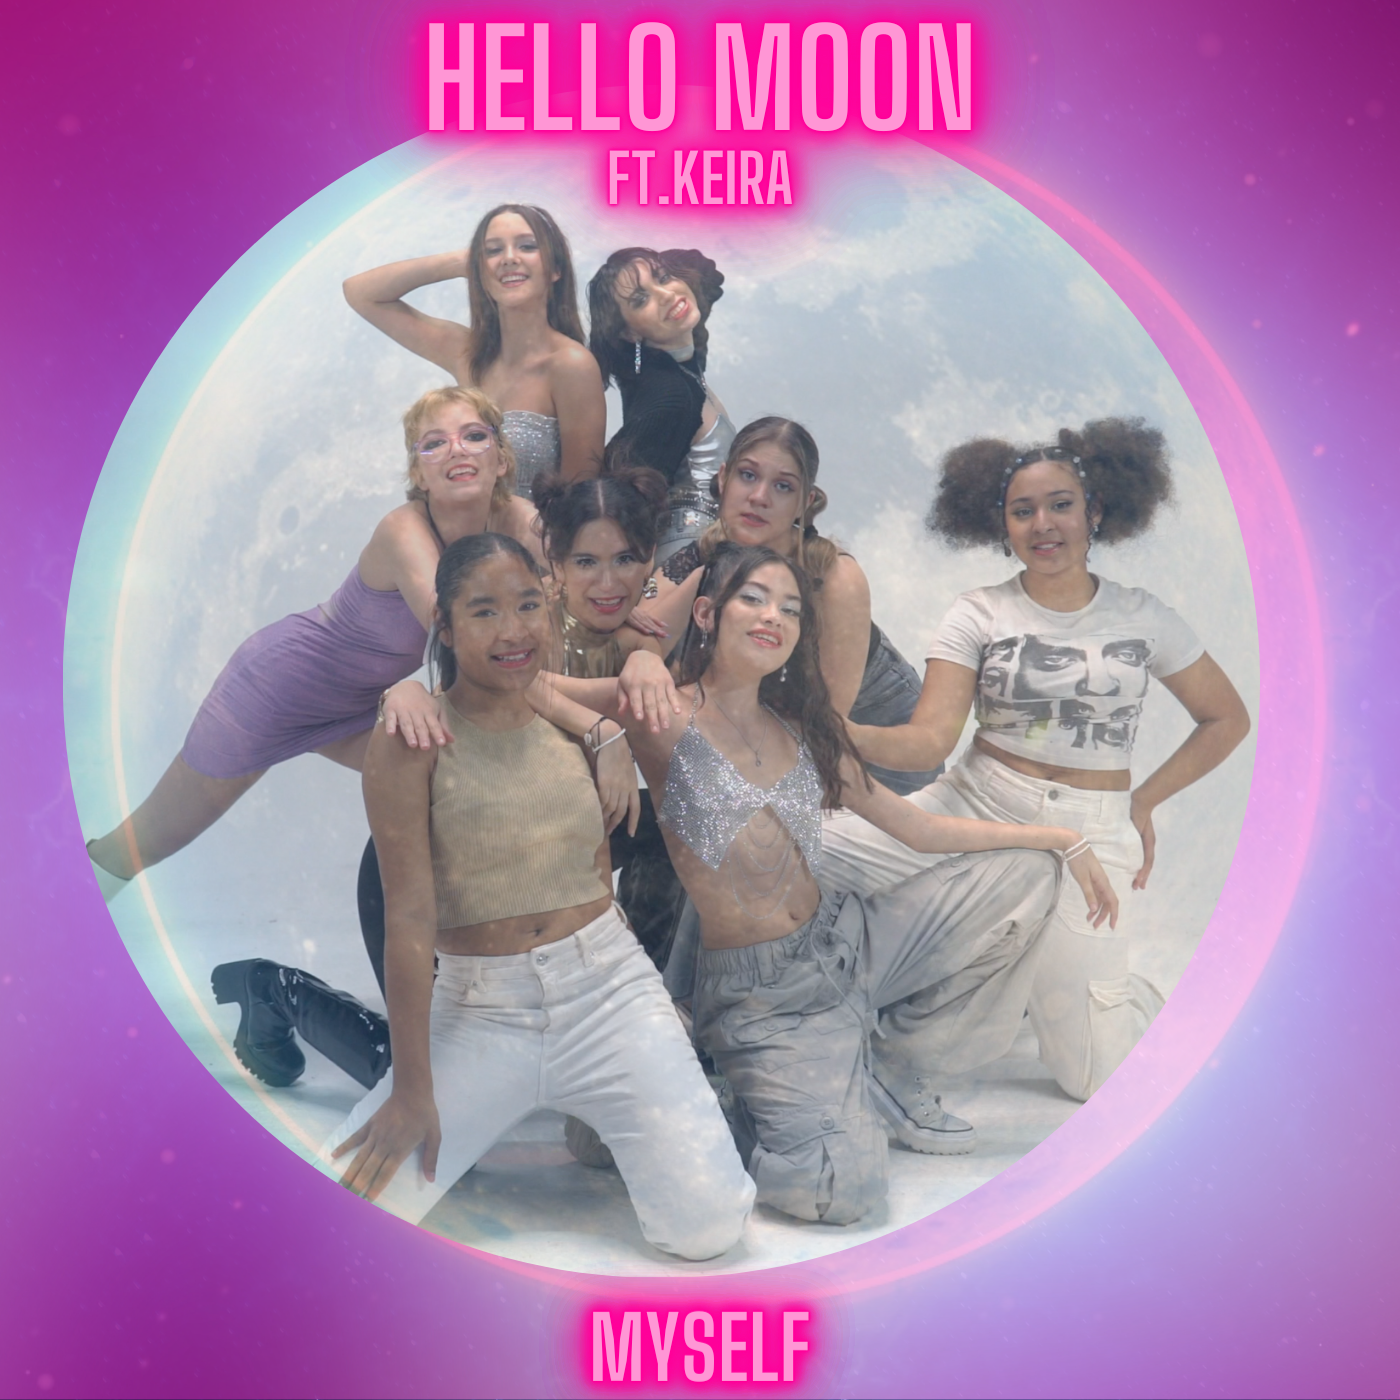 El grupo Hello Moon llega a las plataformas digitales con “Myself